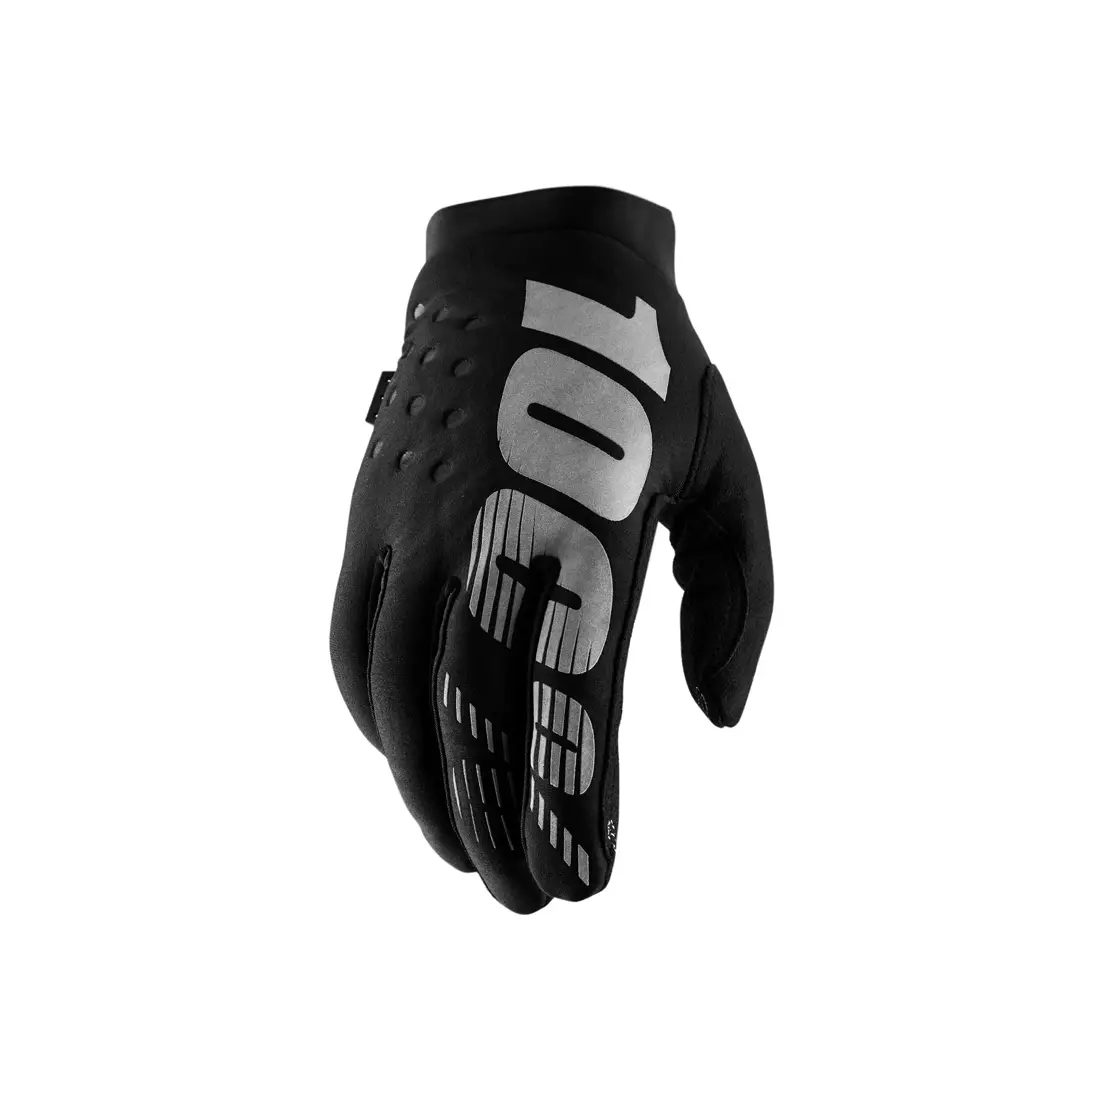 100% rękawiczki rowerowe damskie BRISKER black grey STO-11016-057-10